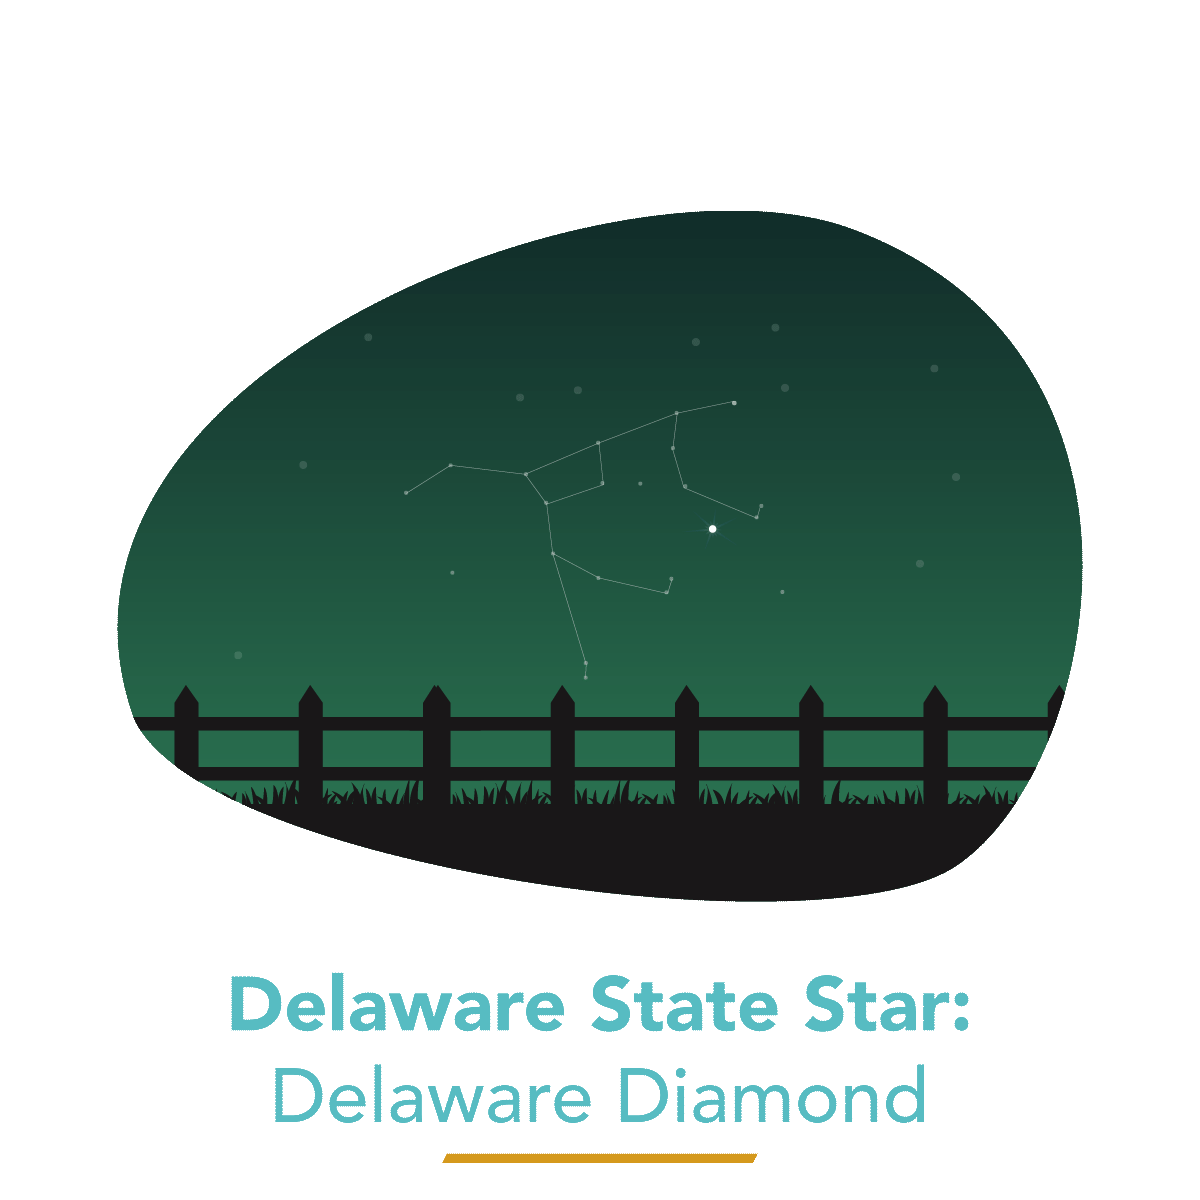 The Delaware Diamond - Delaware's State Star